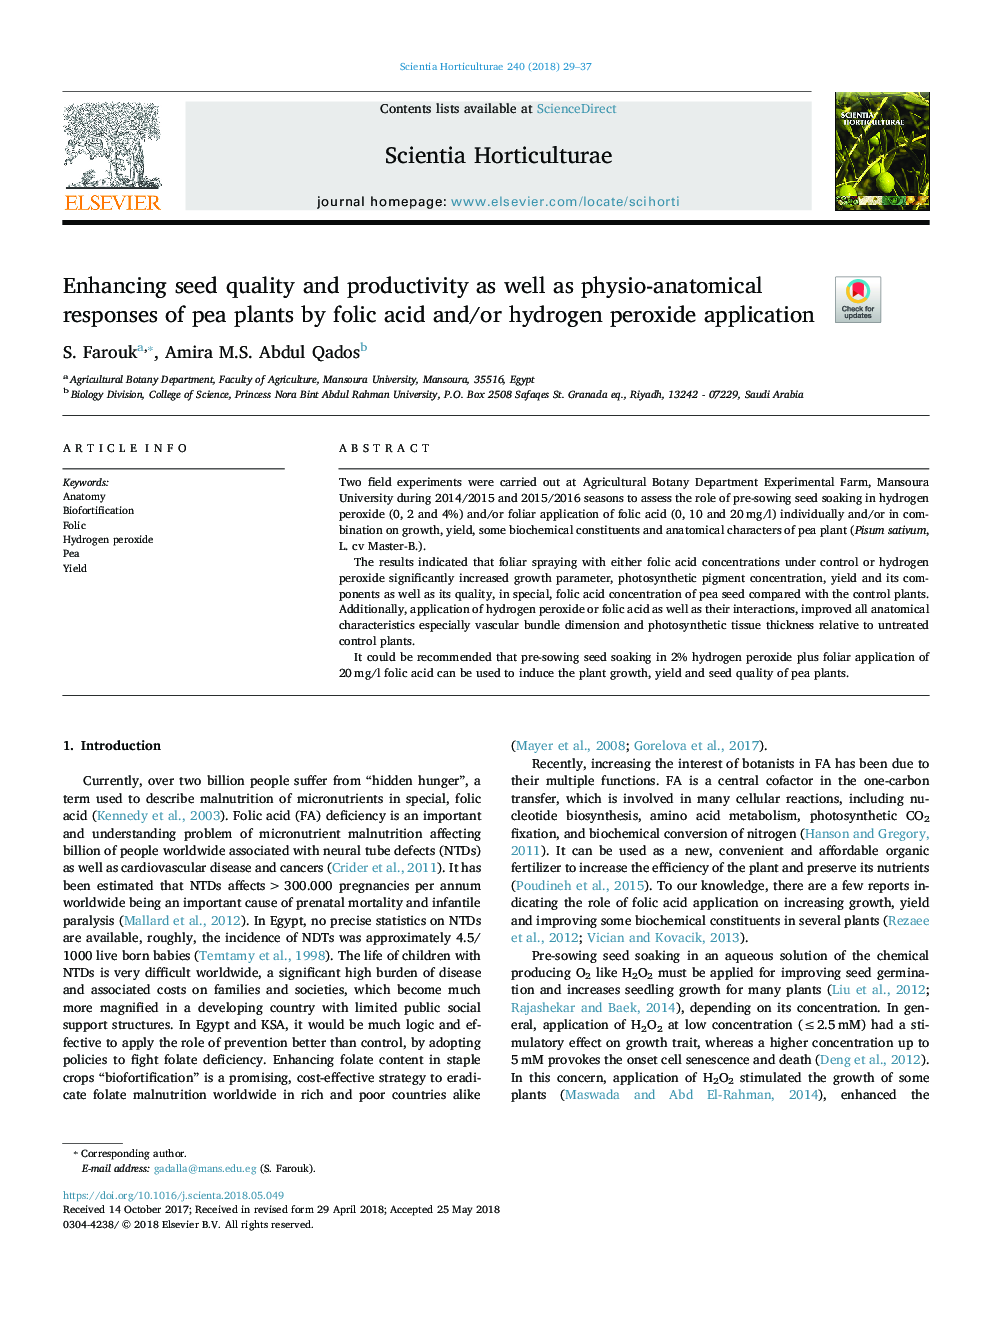 افزایش کیفیت و عملکرد دانه و همچنین پاسخ فیزیولوژیکی آناتومی گیاهان نخود توسط اسید فولیک و / یا استفاده از پراکسید 